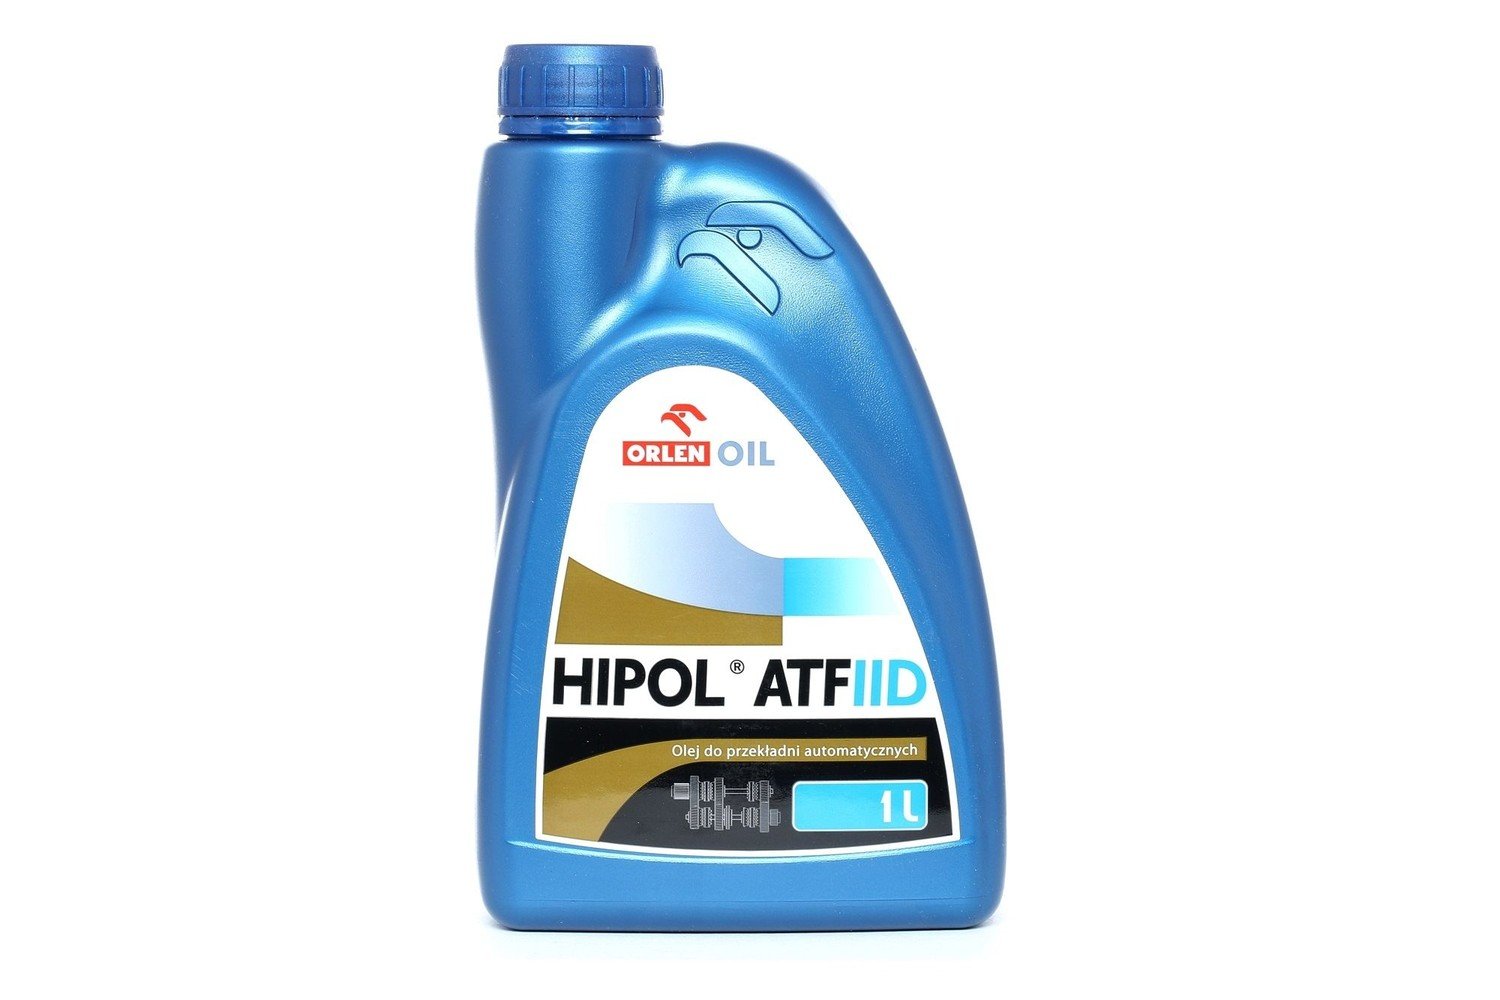 Orlen Oil Hipol ATF IID 1L